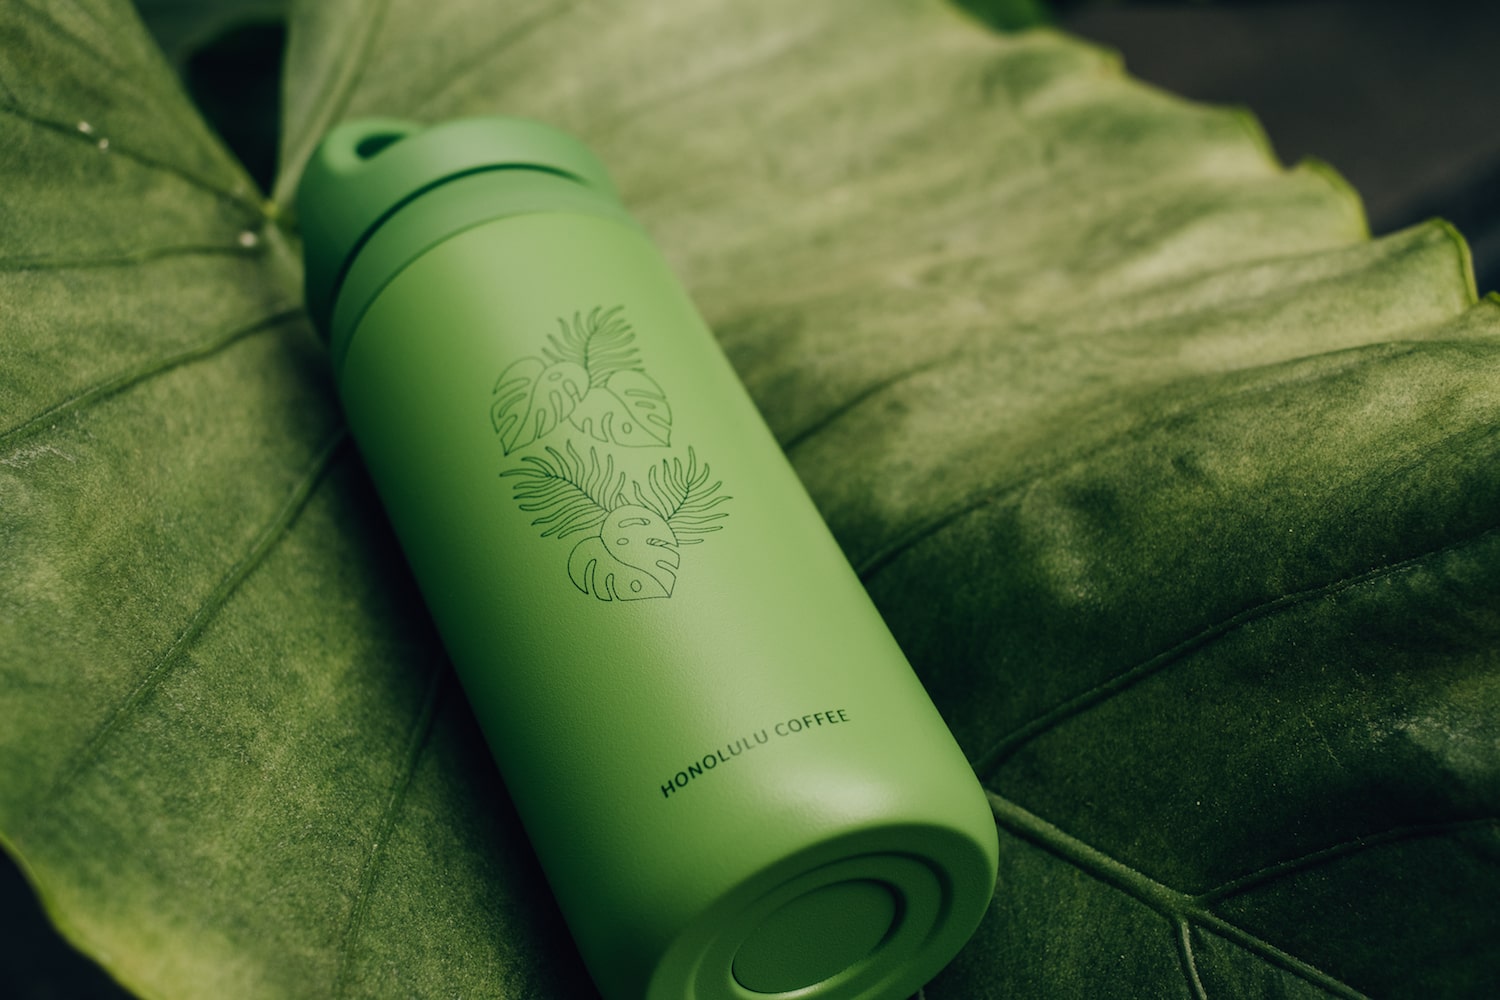 Green water bottle by Kinto